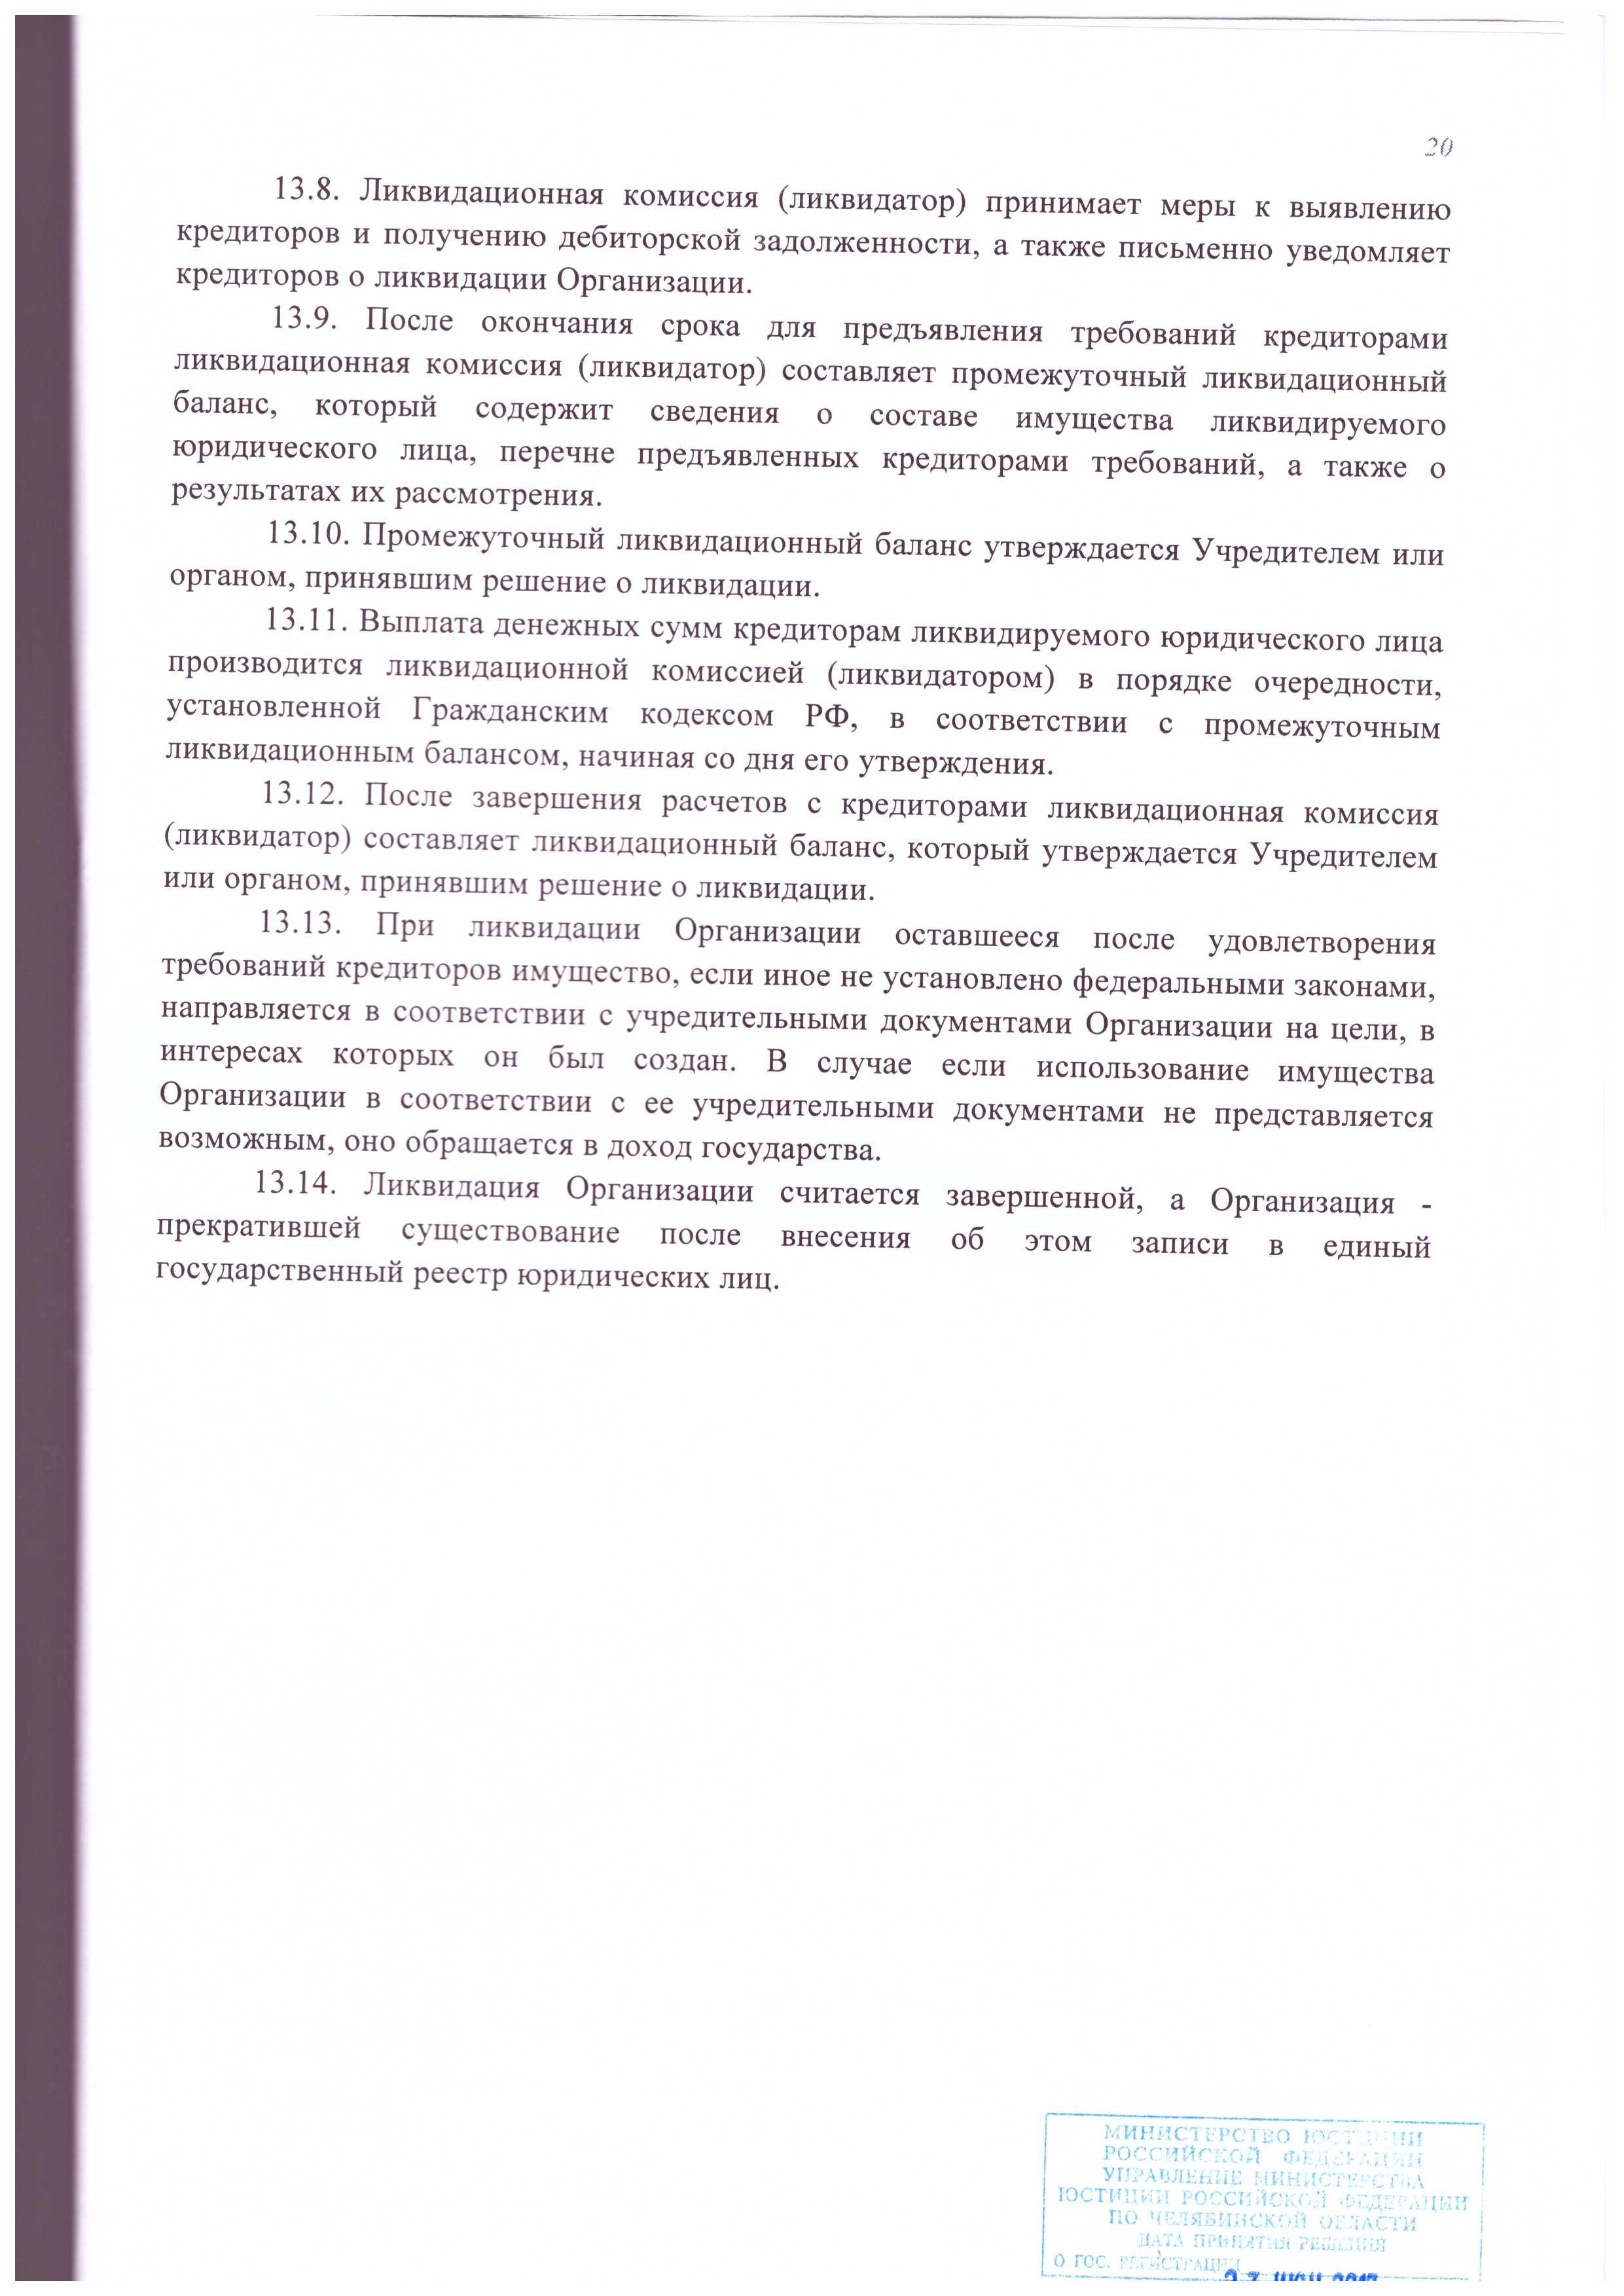 Устав АНО ДПО «СЦПК» (стр. №20)